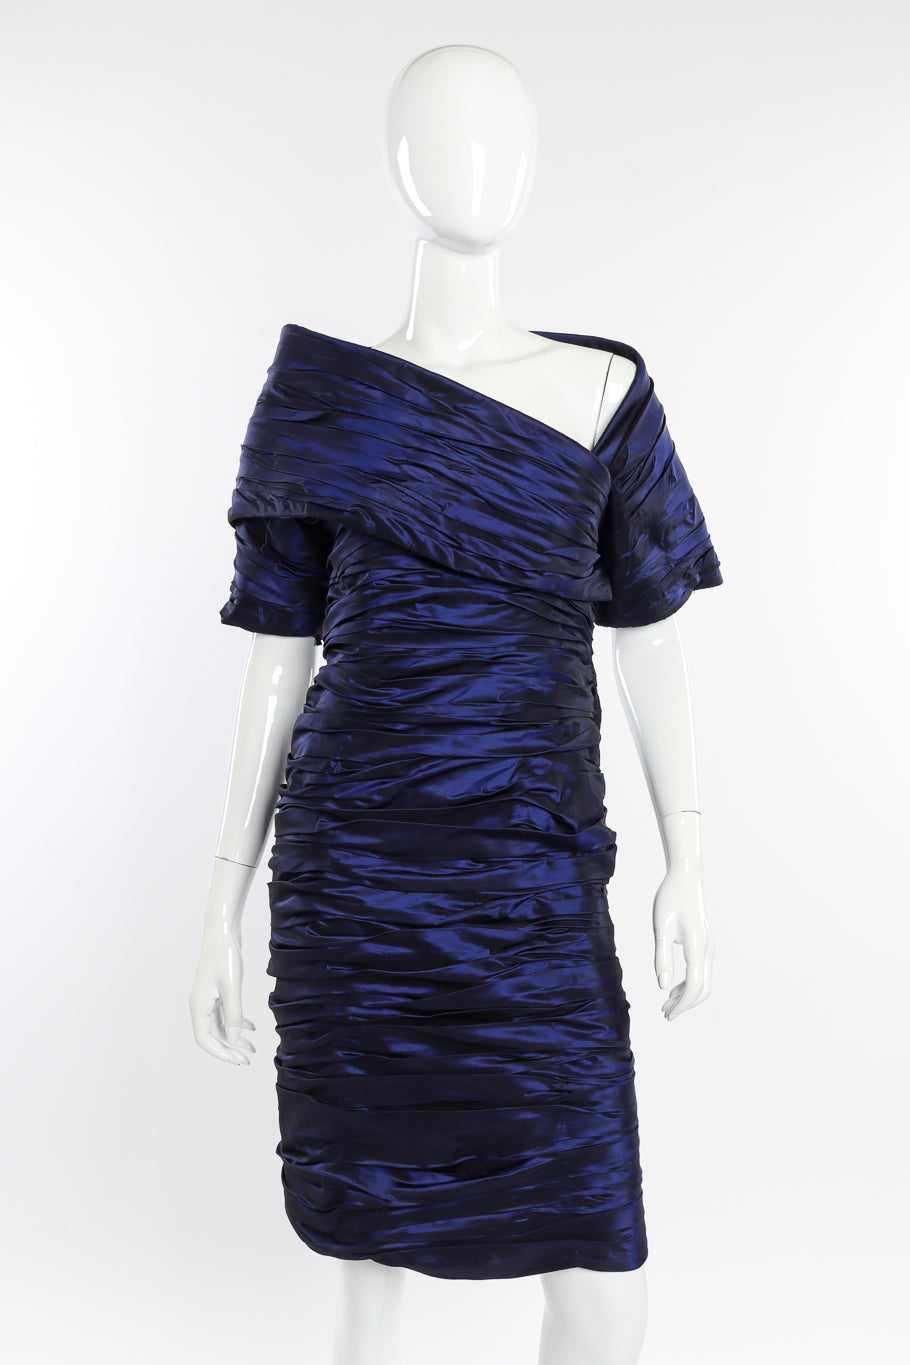 Vintage Jacqueline de Ribes Taffeta Wrap Dress front on mannequin @recessla